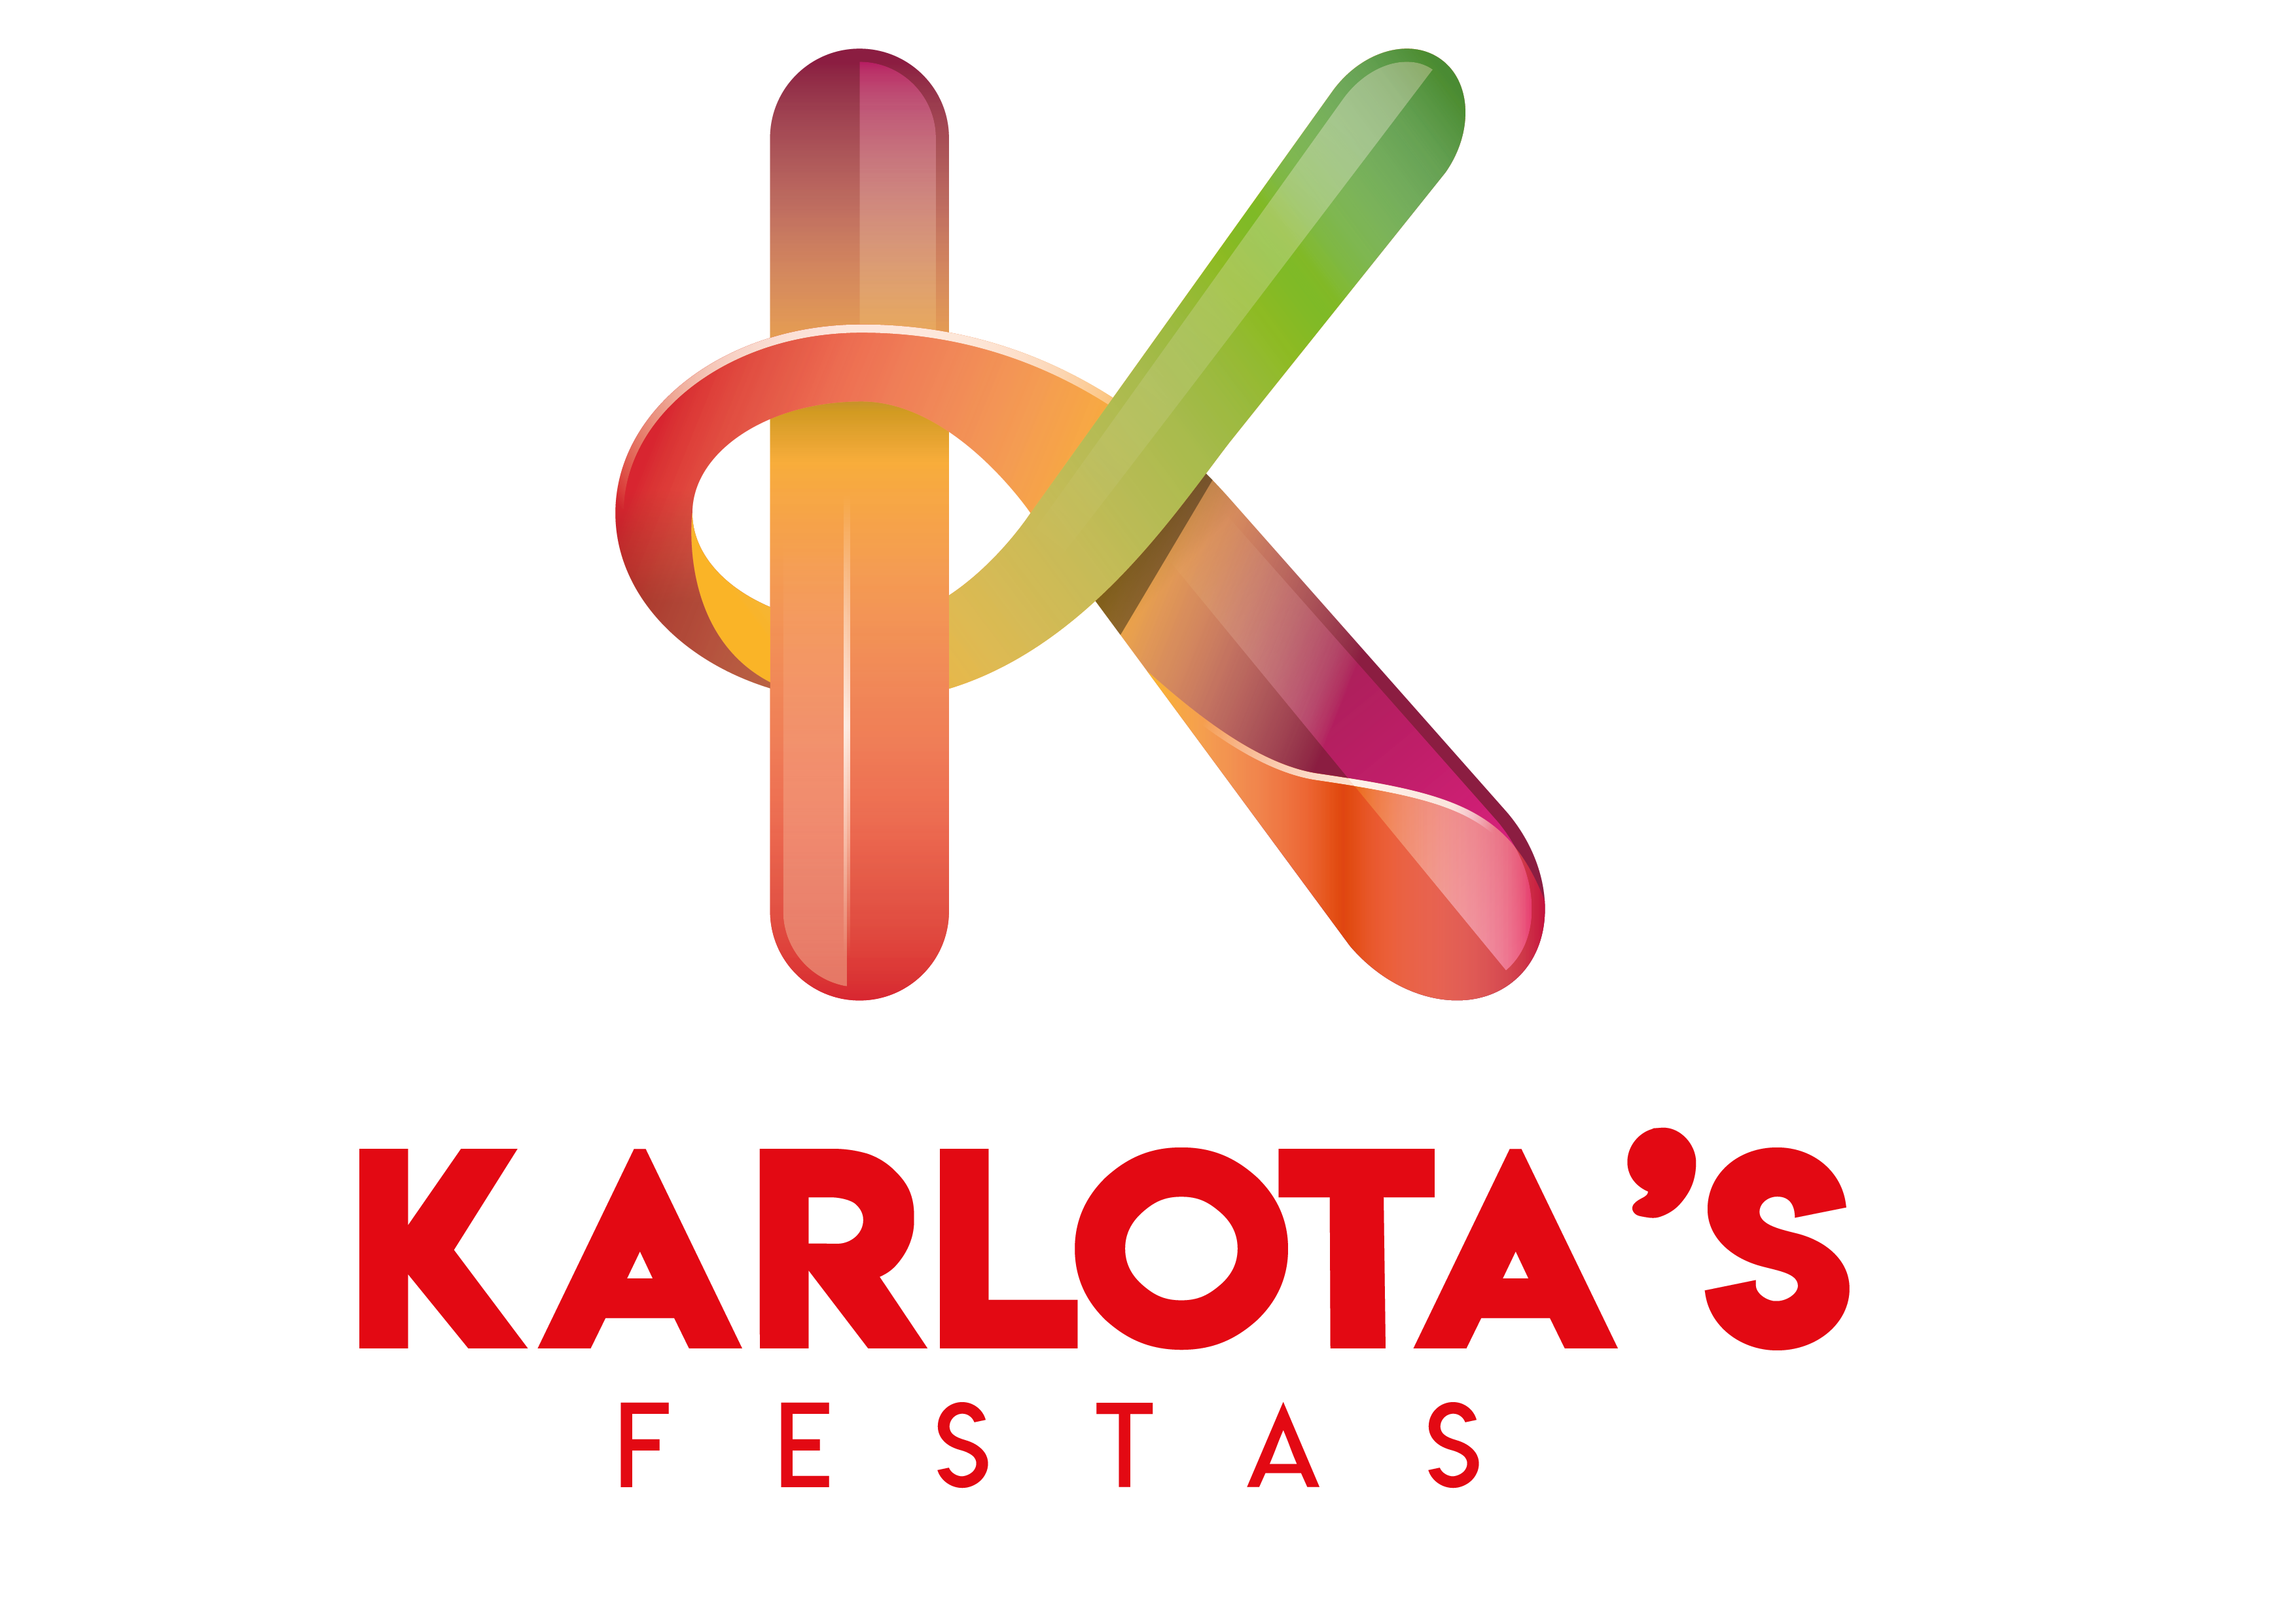 Karlotas Festas